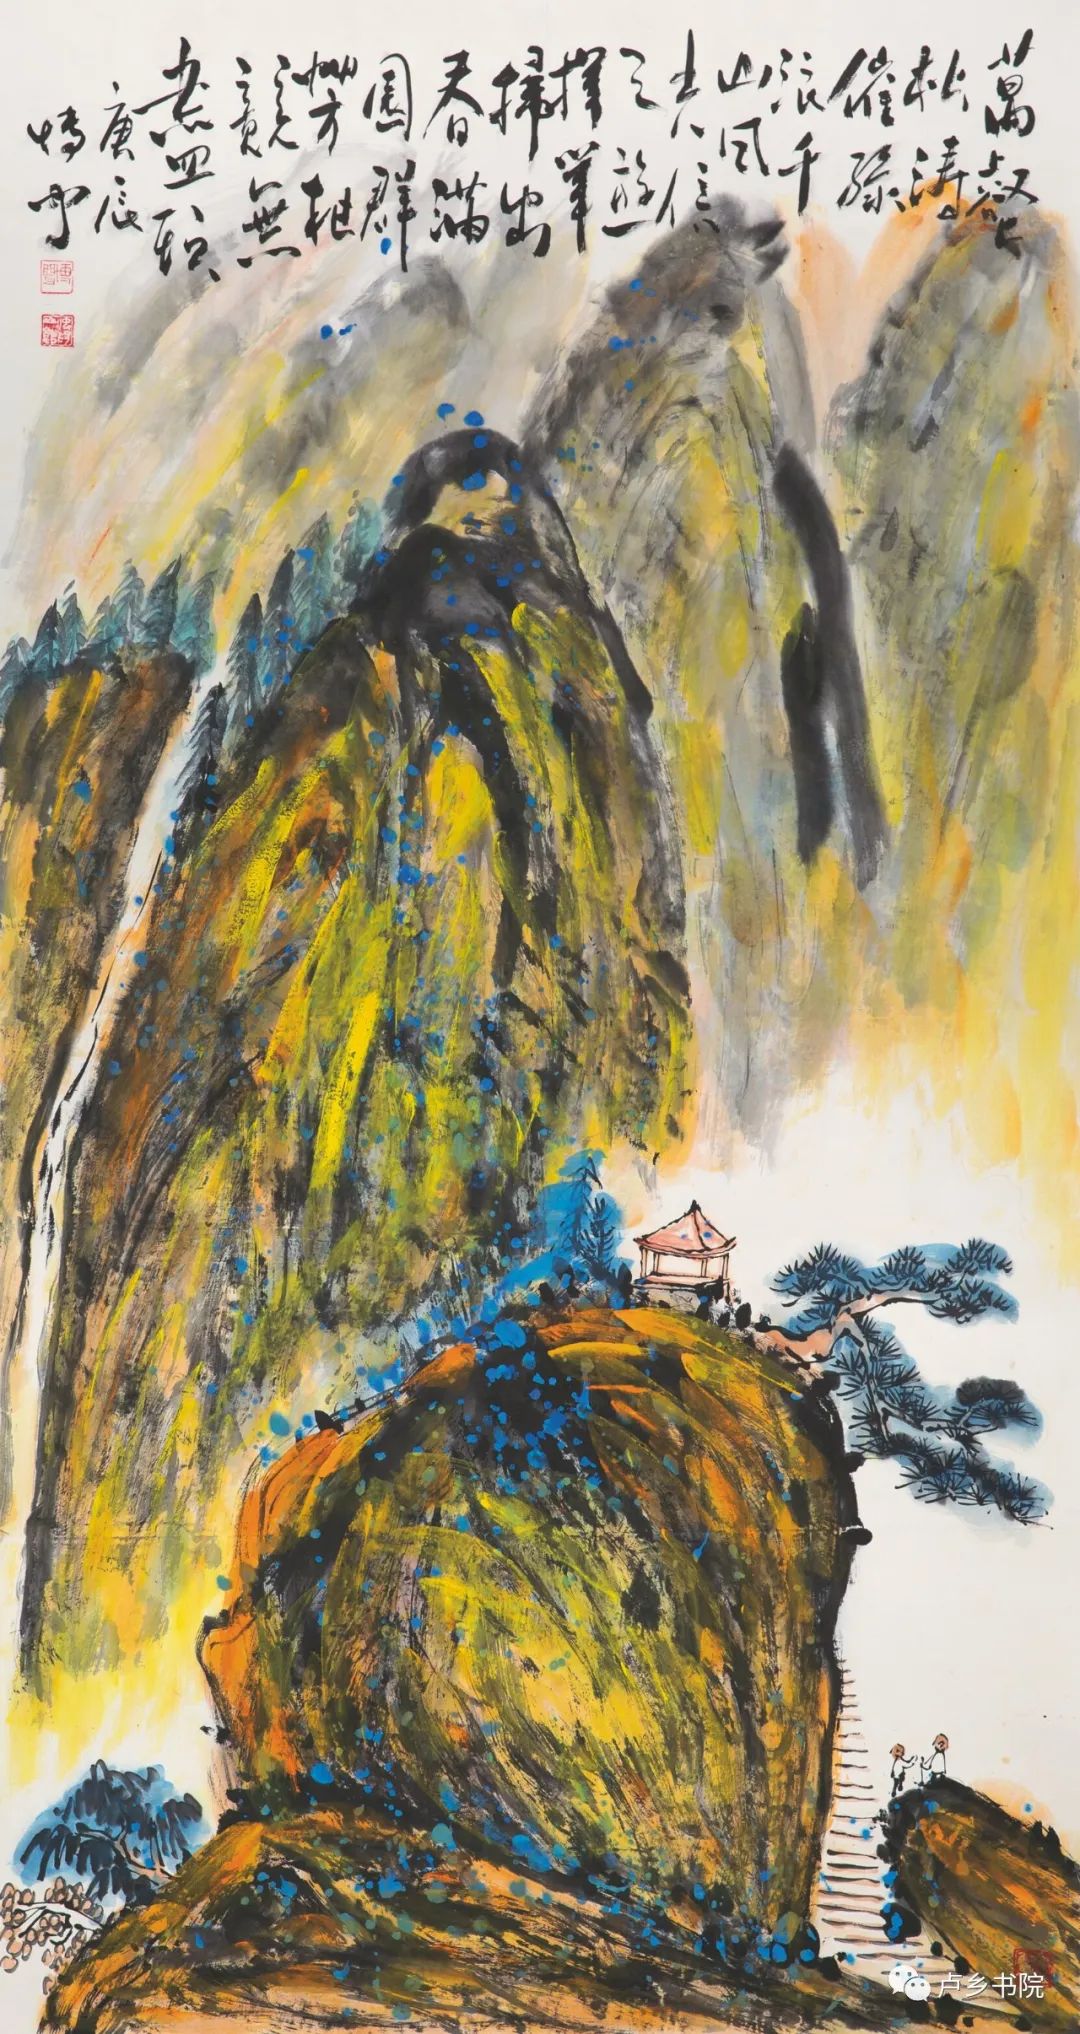 以丘壑和色彩成全笔墨——著名画家孙博文的生命异象